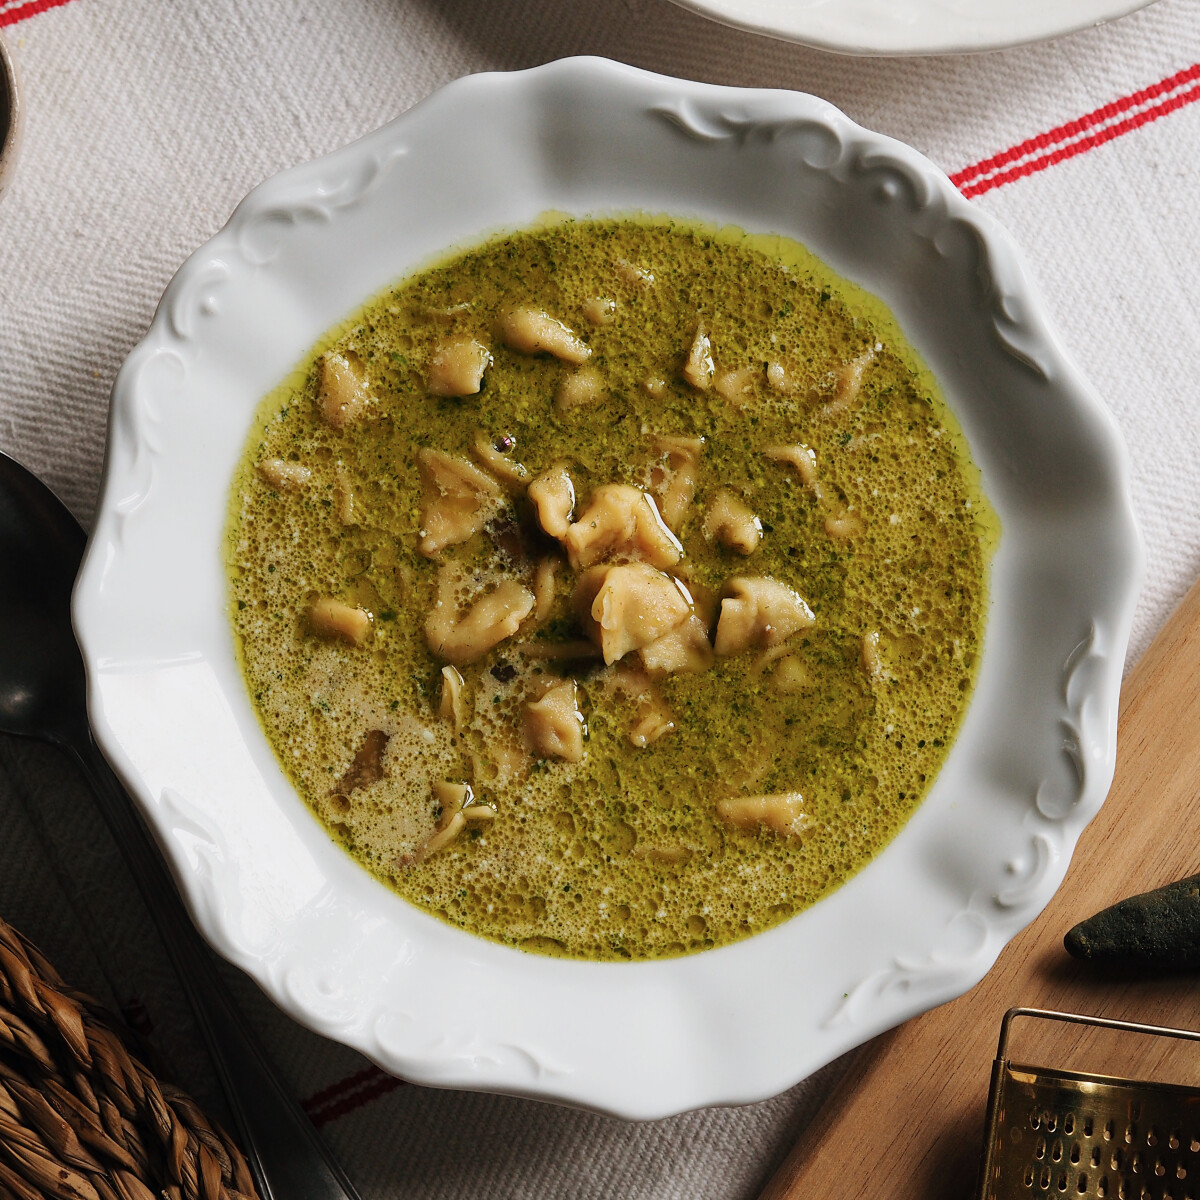 Így készül az ángádzsábur, az erdélyi örmény konyha legízletesebb levese